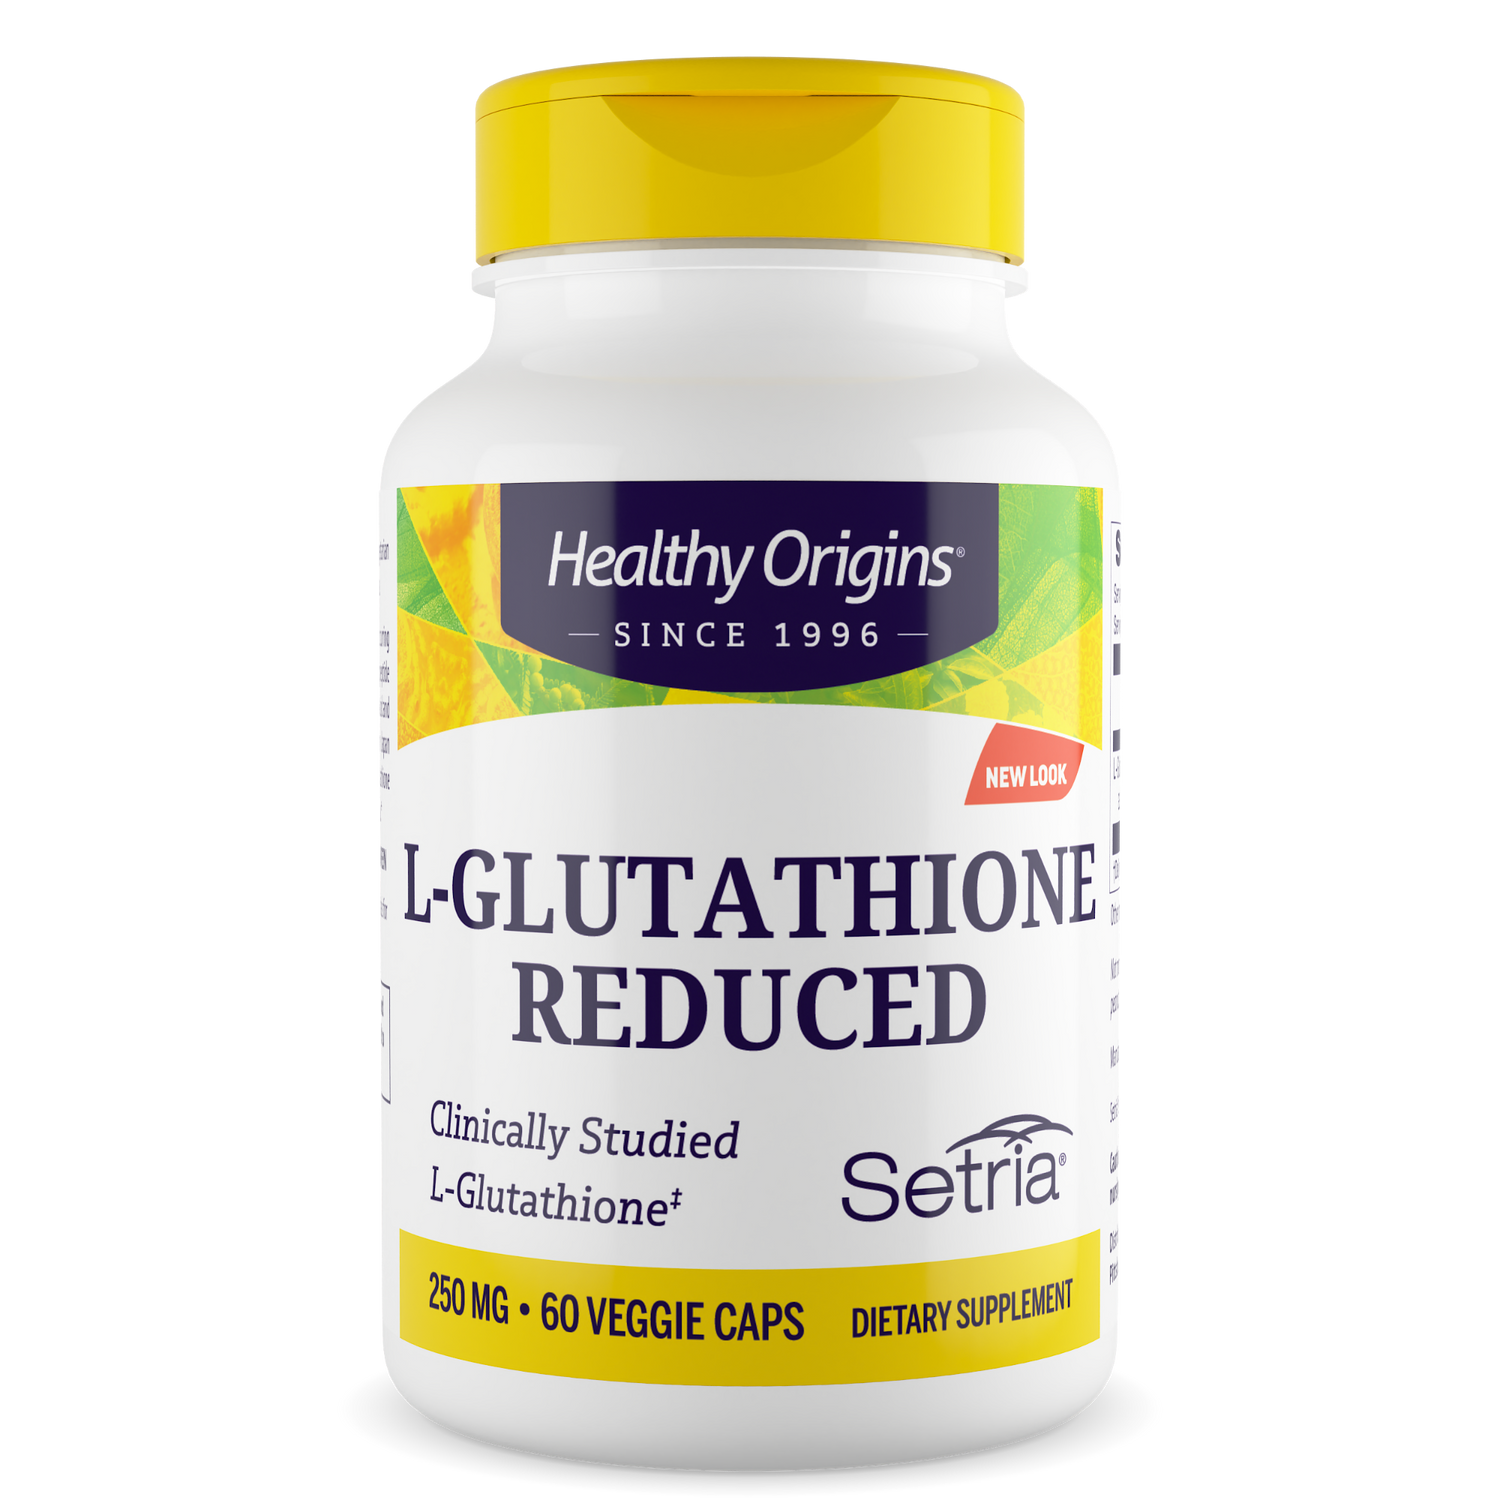 L-Glutathione 250mg (Setria®) "reduced"